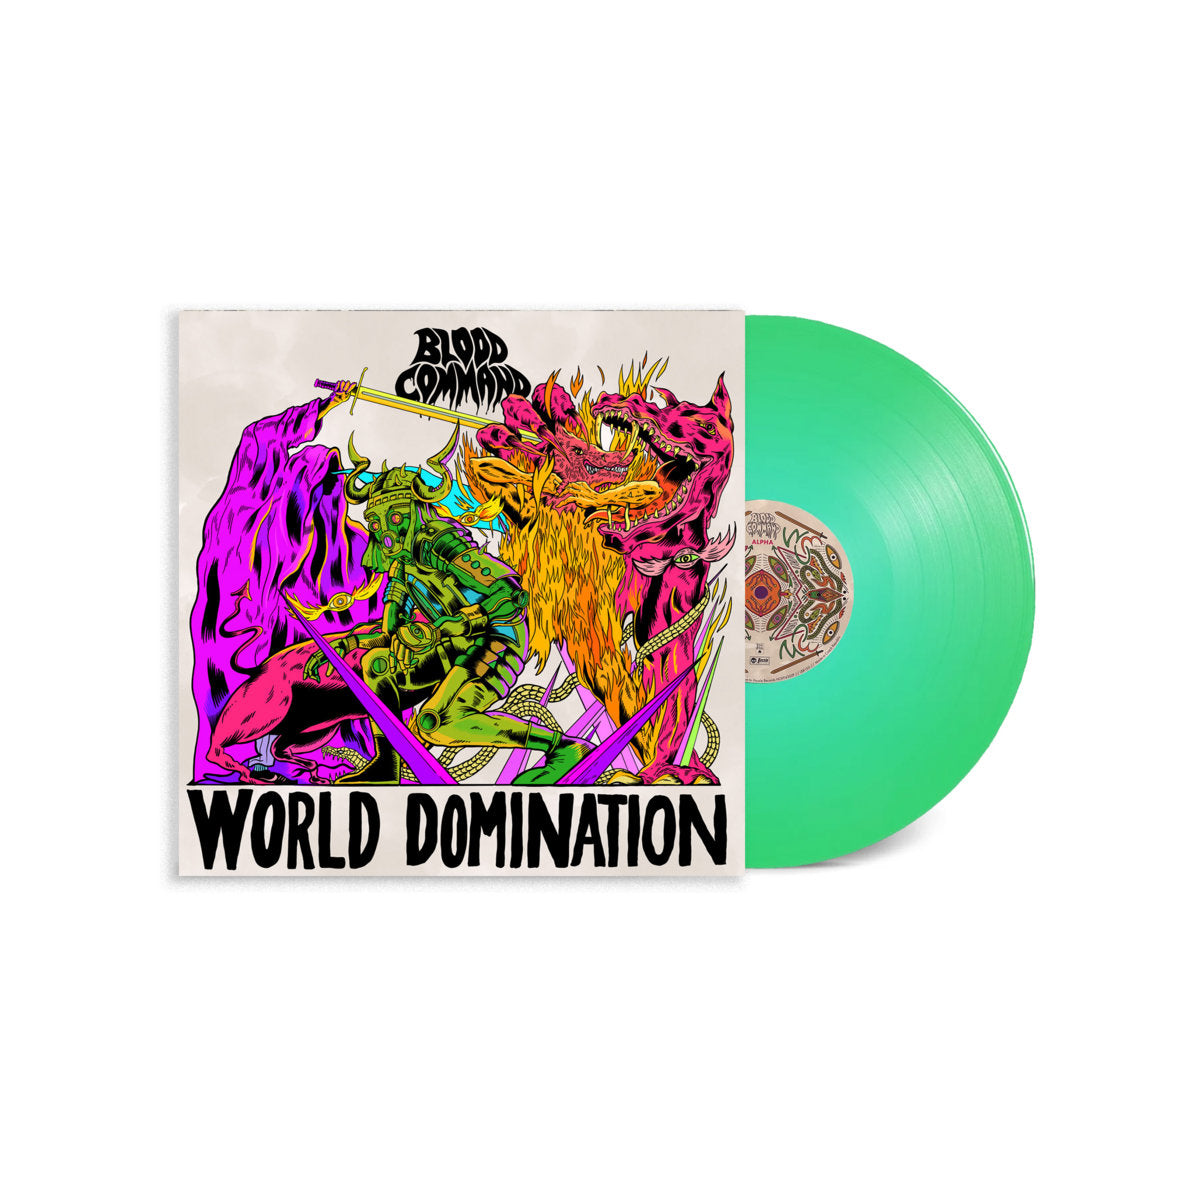 BLOOD COMMAND - World Domination - LP - Glow in the Dark Vinyl [JUN 14]